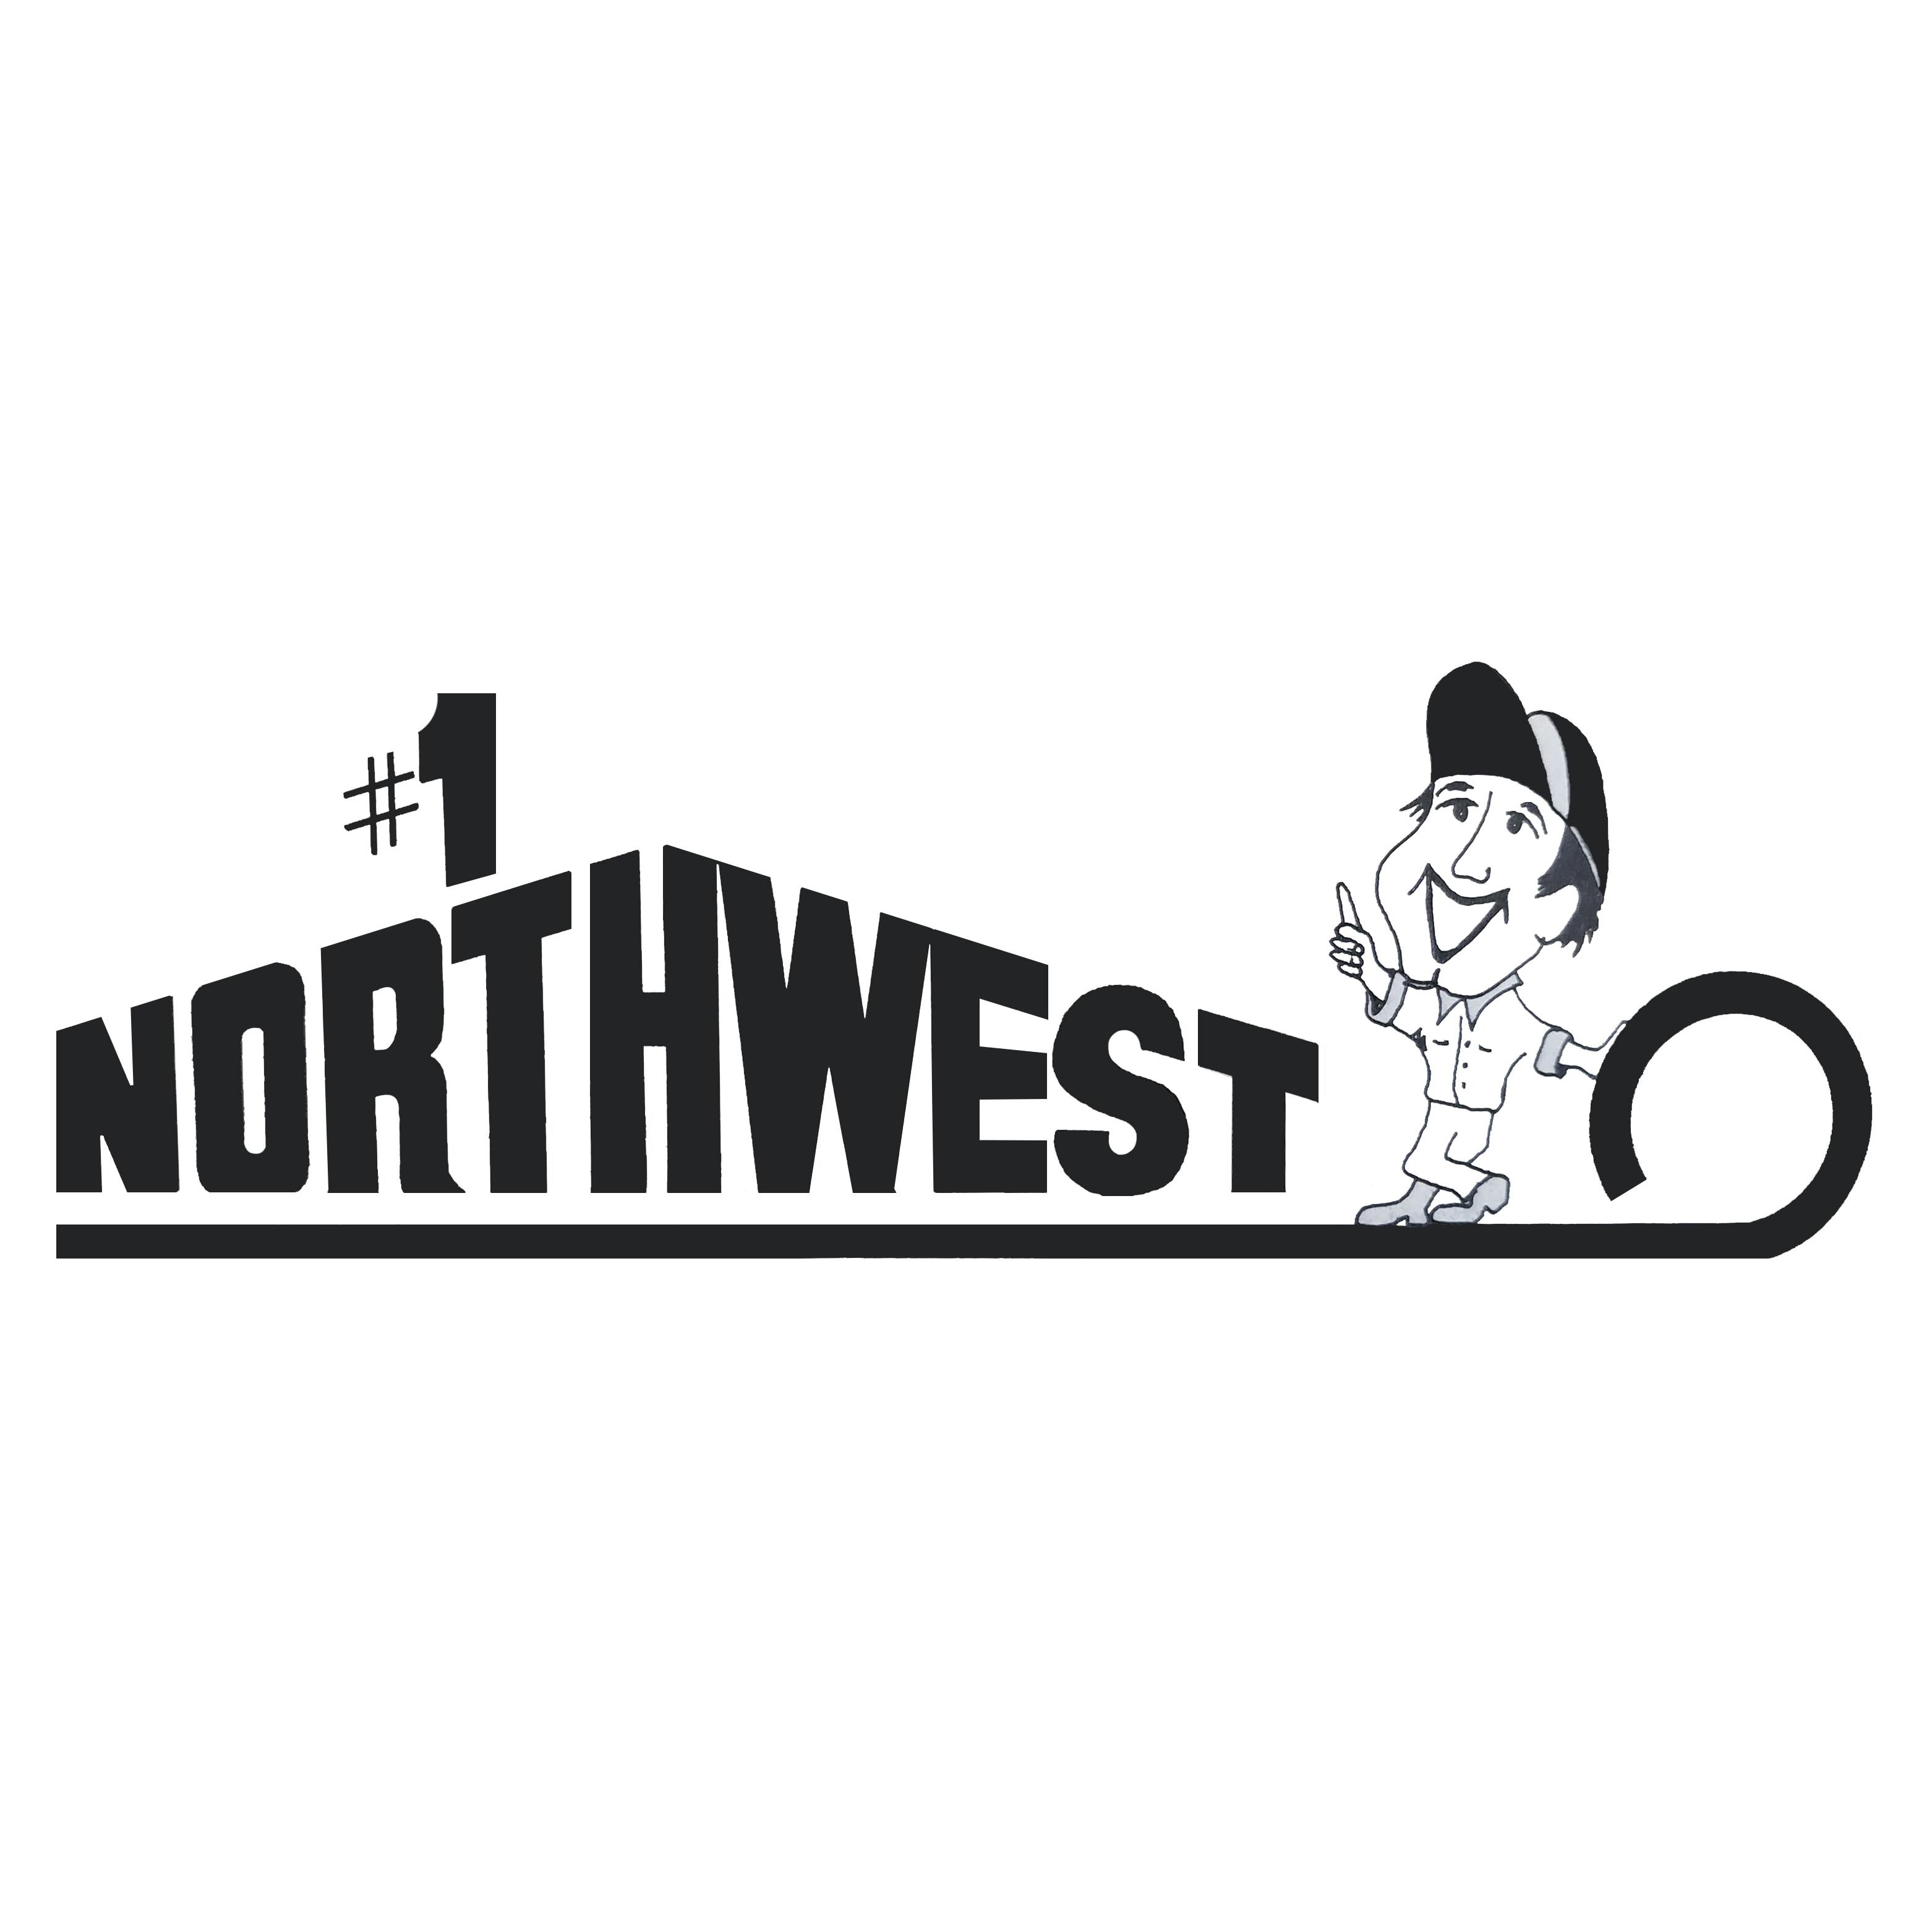 Number 1 Northwest Mobile Home Service Logo